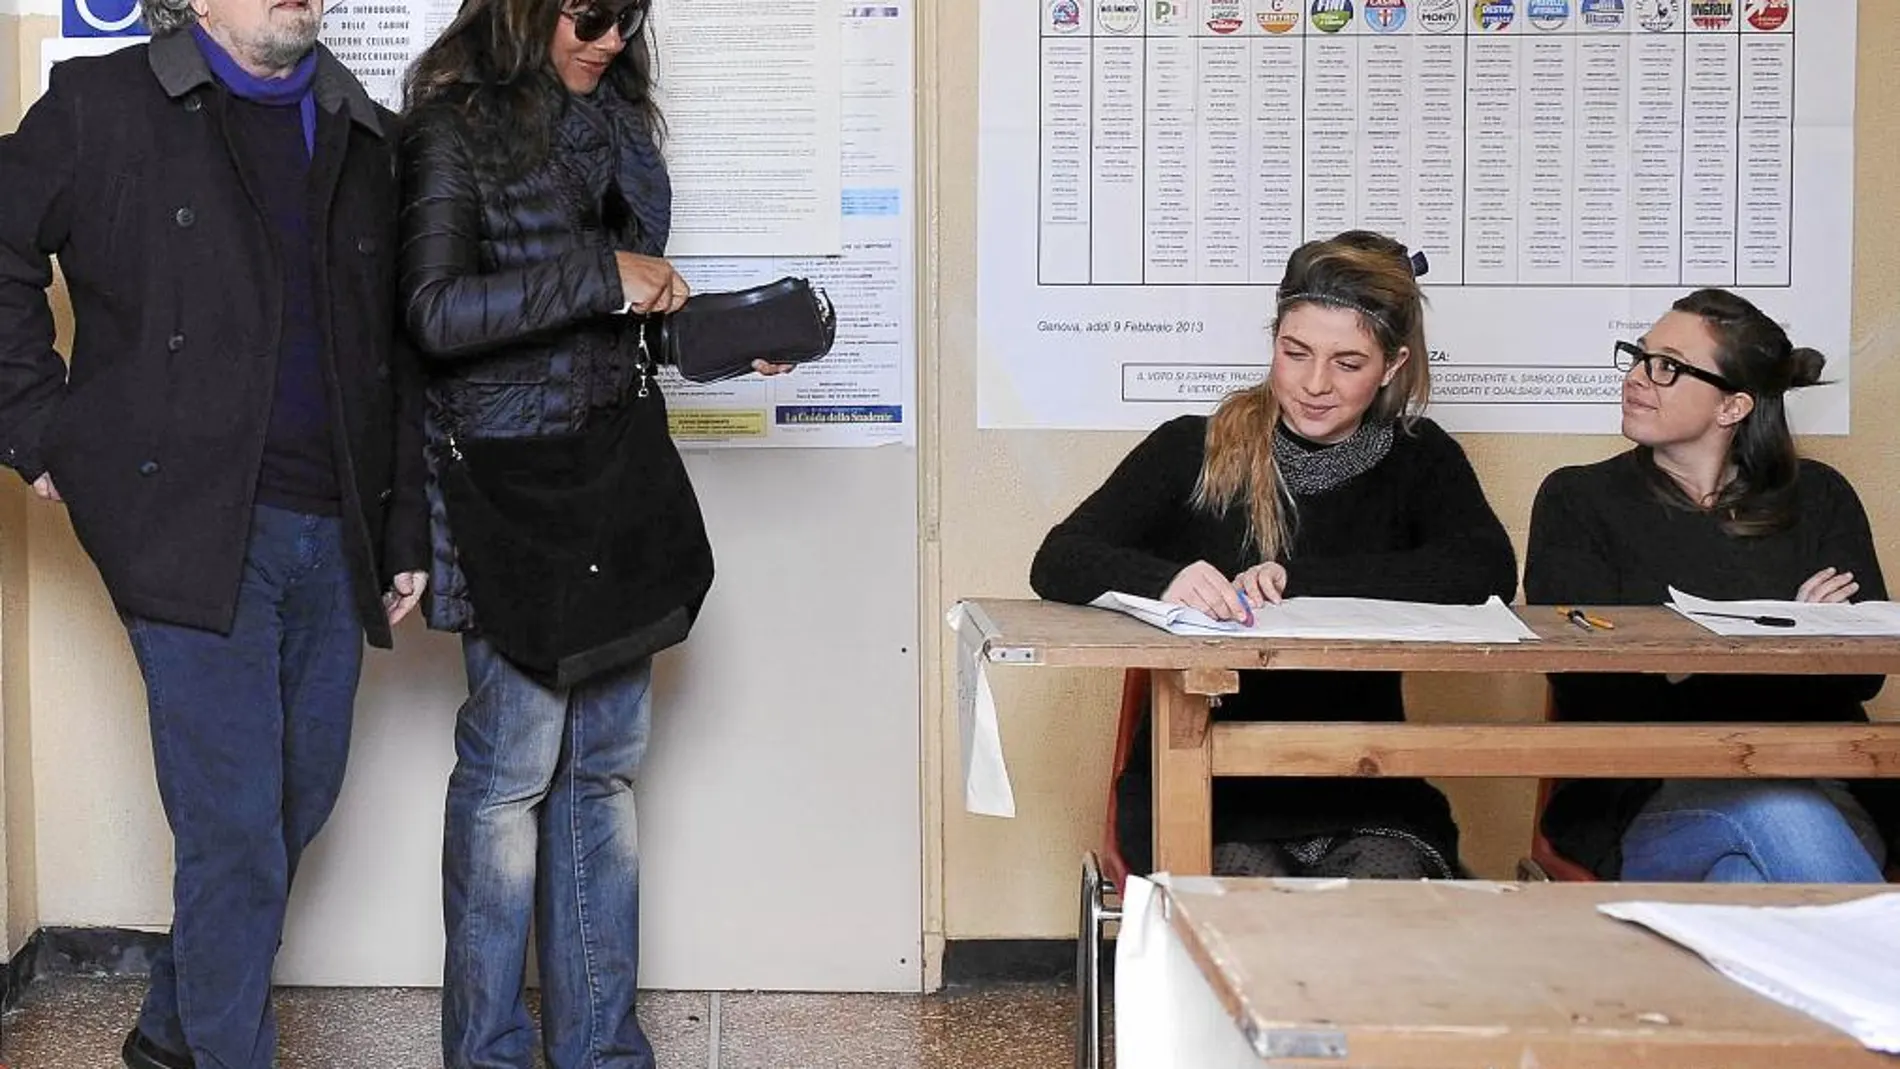 El humorista Beppe Grillo y su esposa votaron en Génova